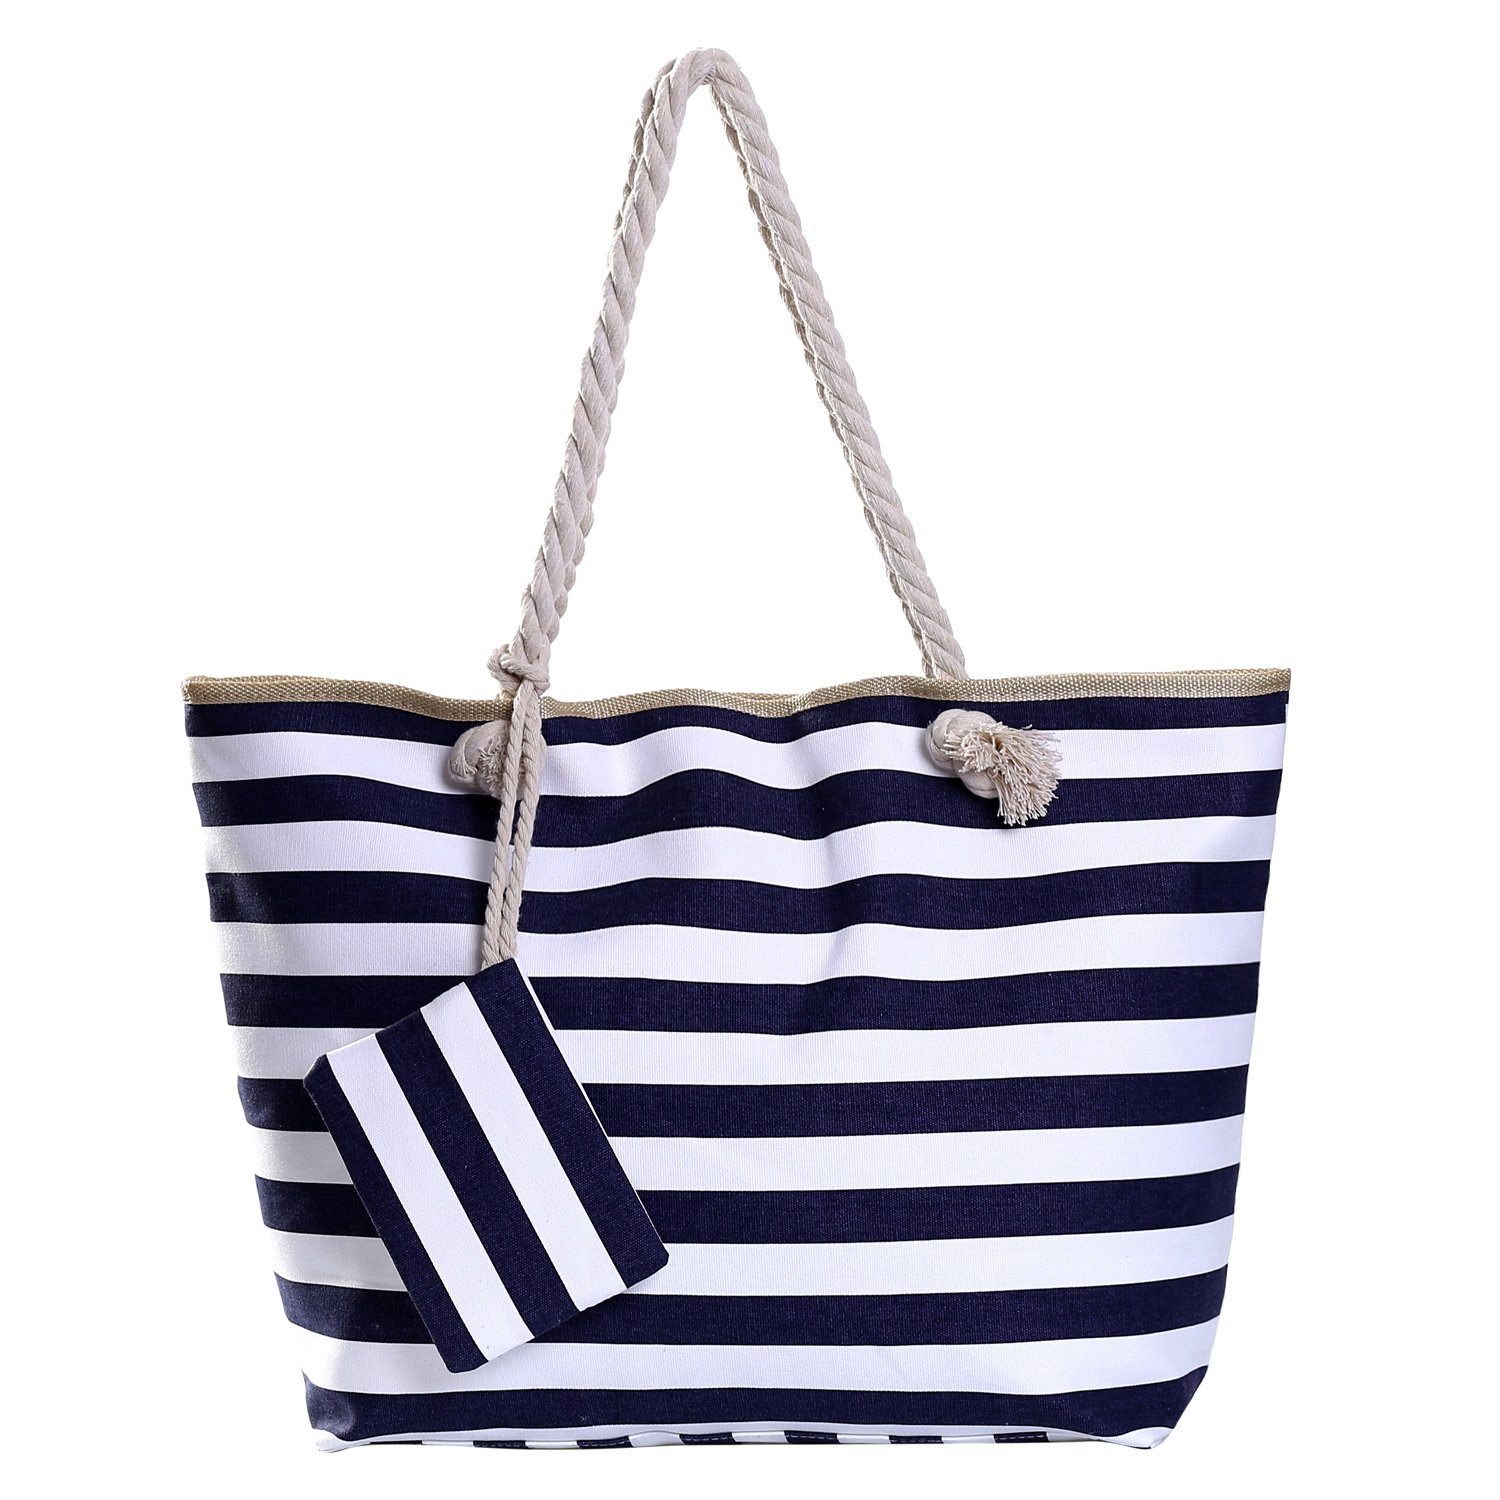 DonDon Strandtasche Shopper wasserabweisende Tasche (2-tlg), Große Strandtasche, mit Reißverschluss, inkl. kleinem Beutel dunkelblau-weiß gestreift 1